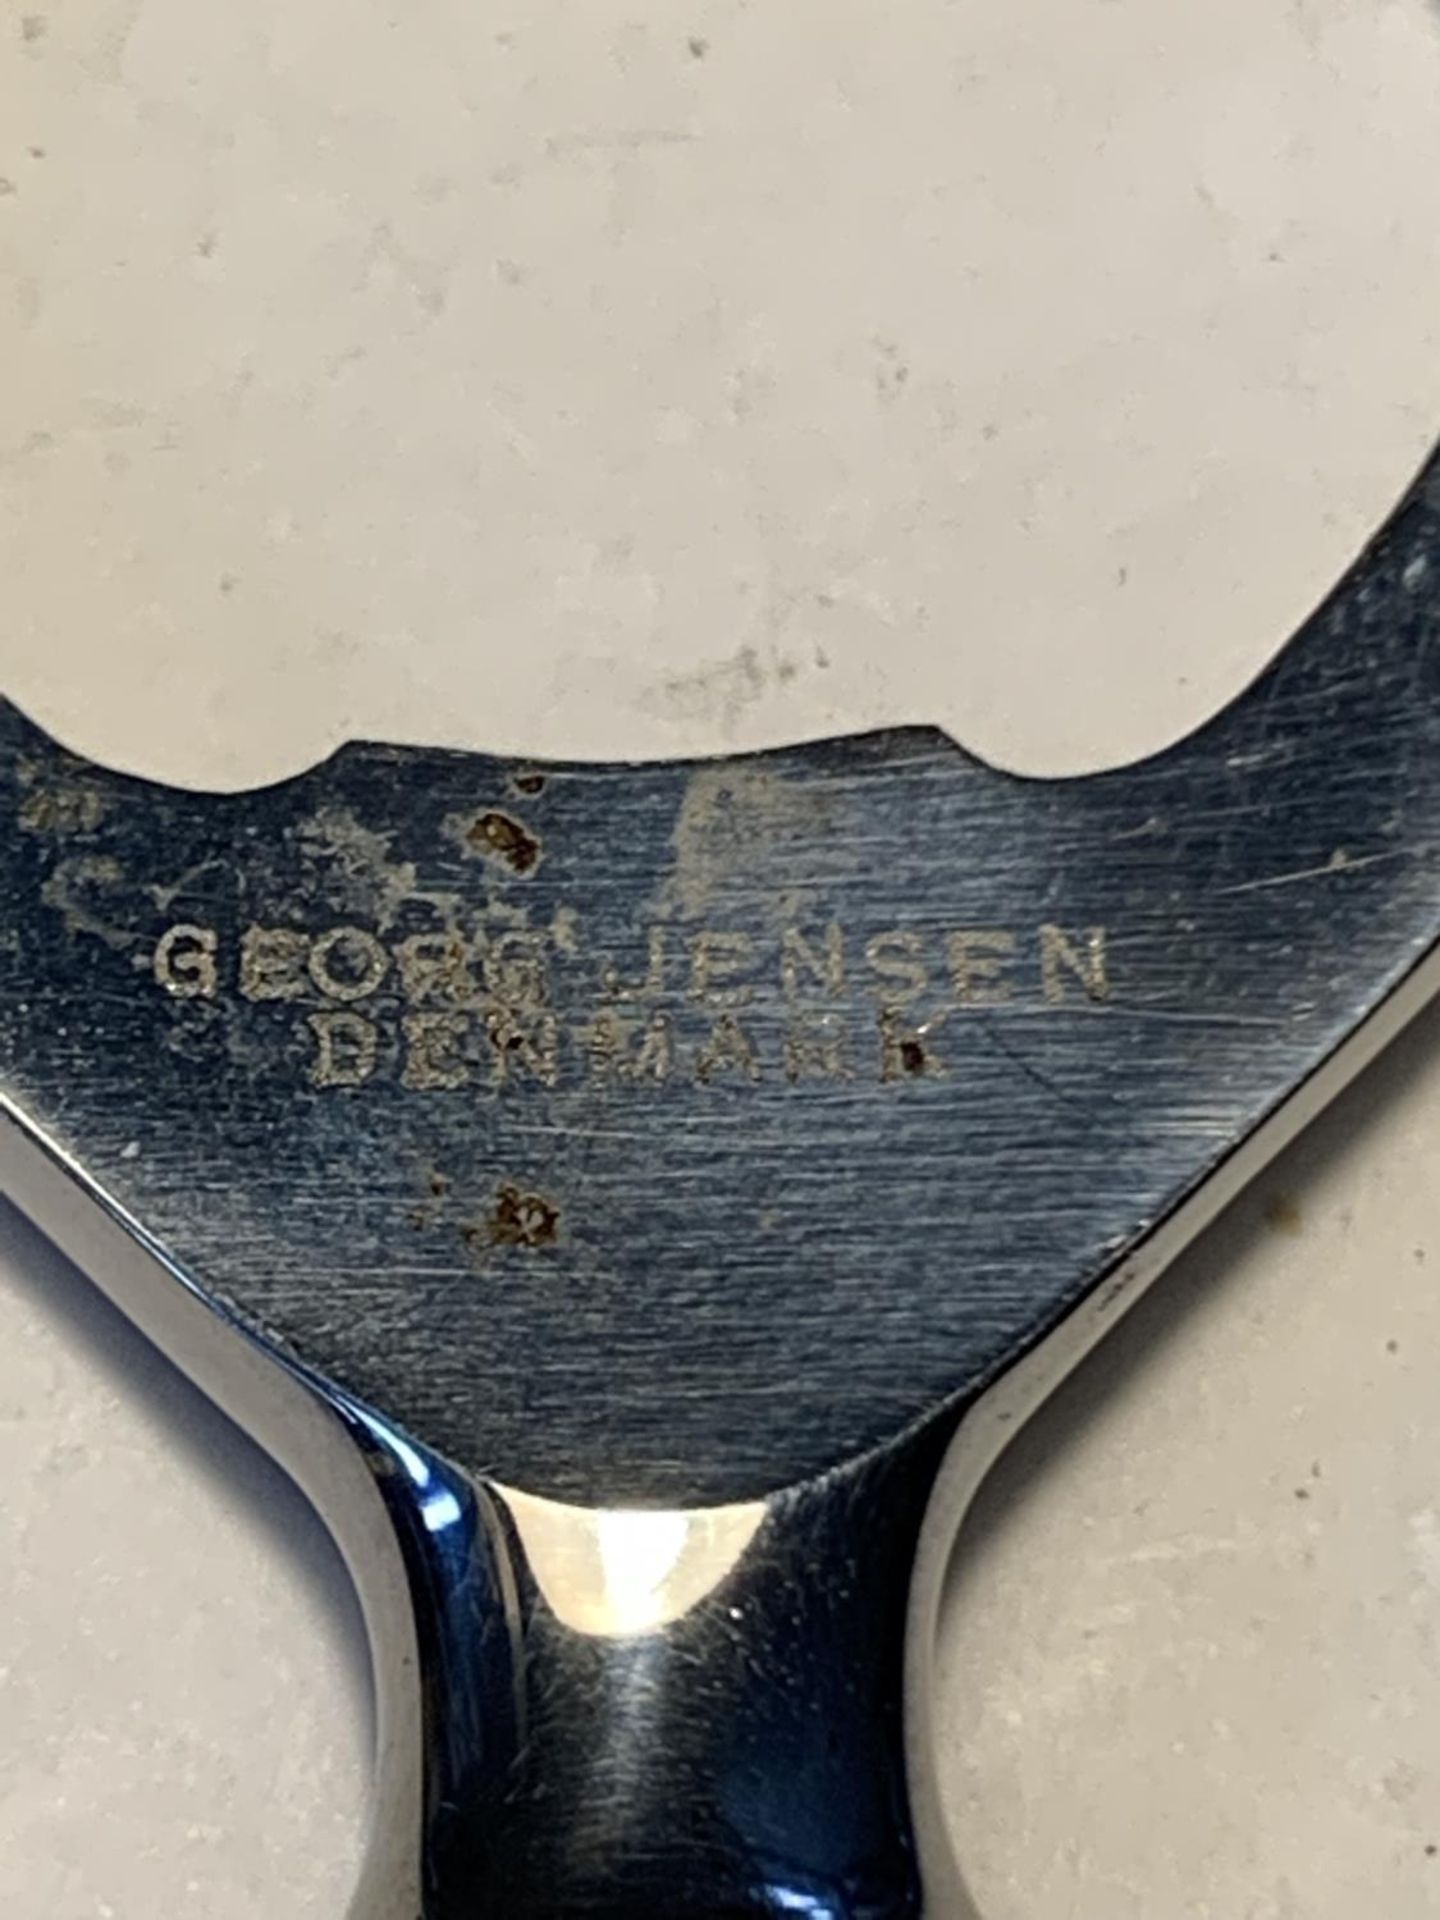 A GEORG JENSEN DENMARK ACORN BOTTLE OPENER MARKED 925 STERLING DENMARK ON THE HANDLE - Image 2 of 4